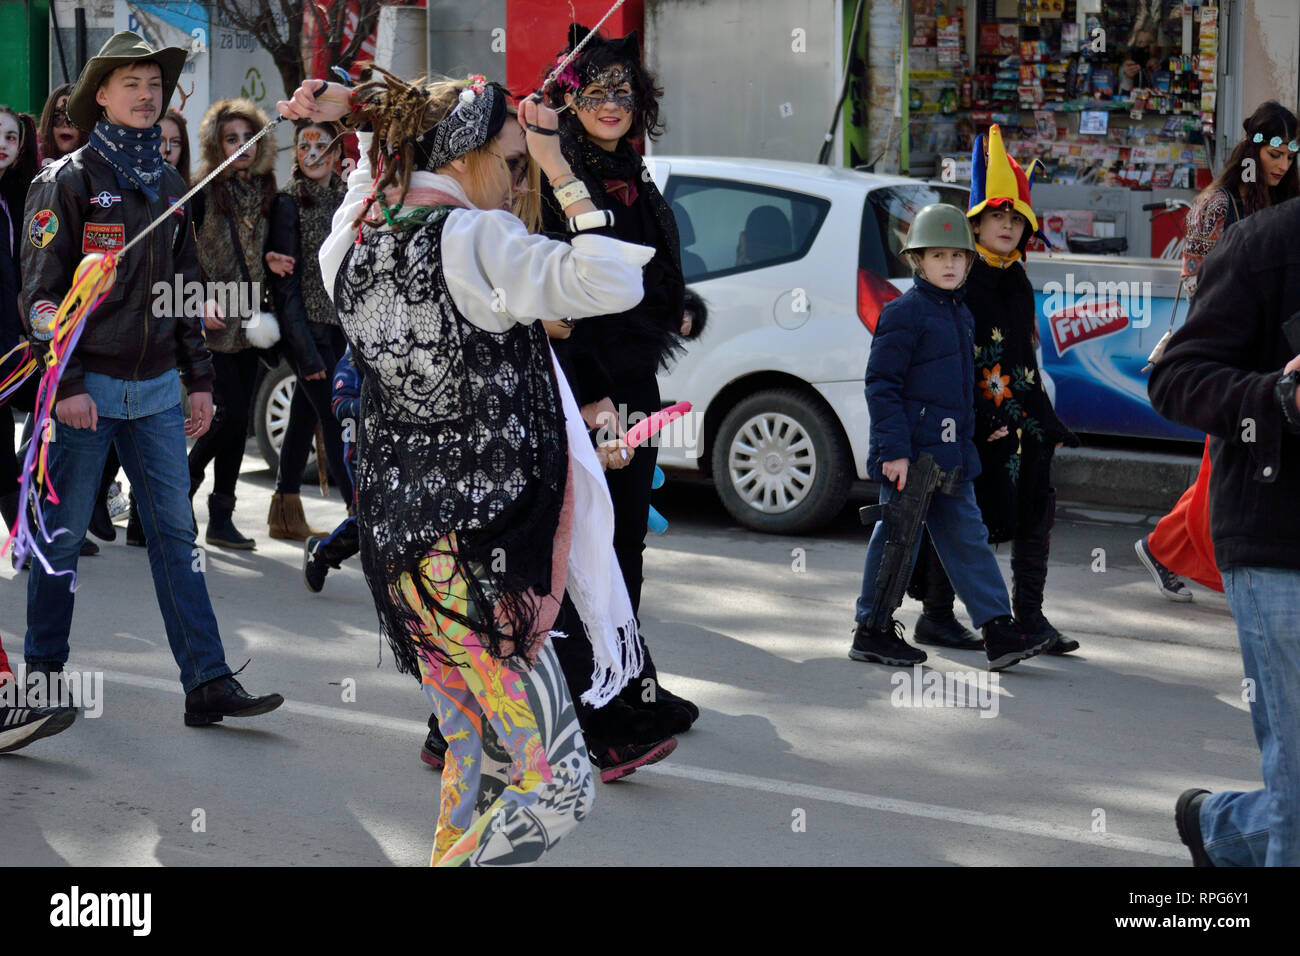 Gruppe der verkleidete Menschen auf der Straße während des Karnevals, Svilajnac, Serbien, Europa Stockfoto